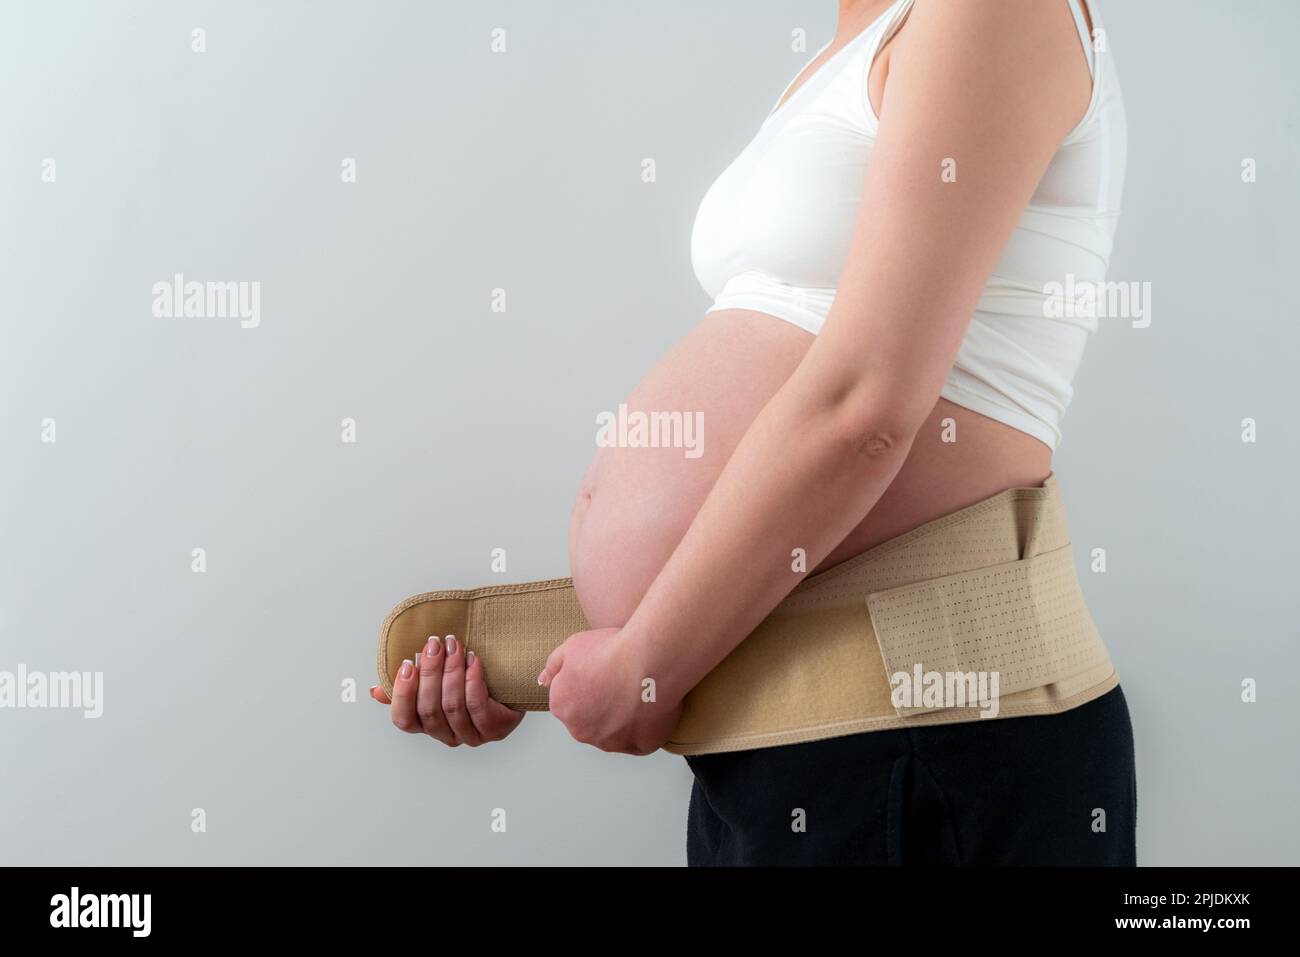 Femme enceinte mettant sur le bandage de soutien pour réduire le mal de dos.  Concept de ceinture abdominale orthopédique Photo Stock - Alamy